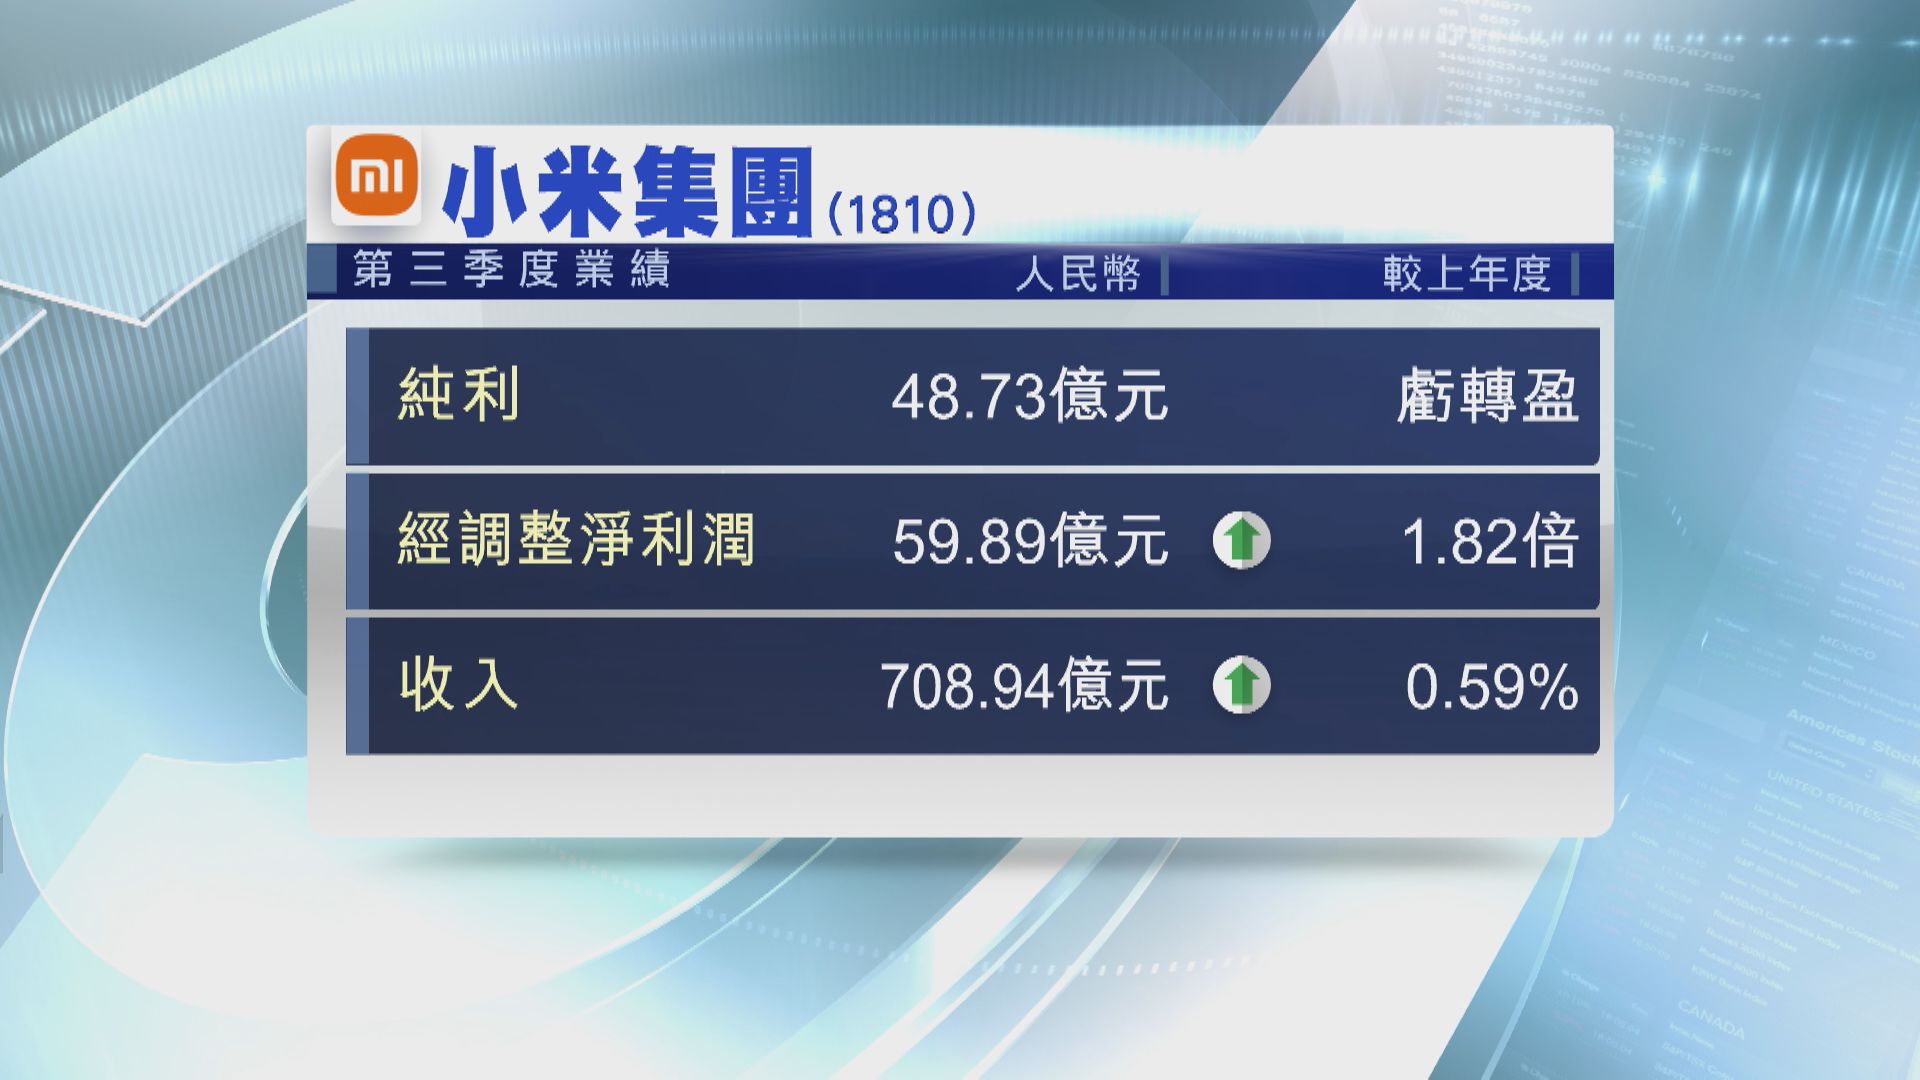 【藍籌業績】小米上季轉賺48.7億人幣 收入僅增近0.6%